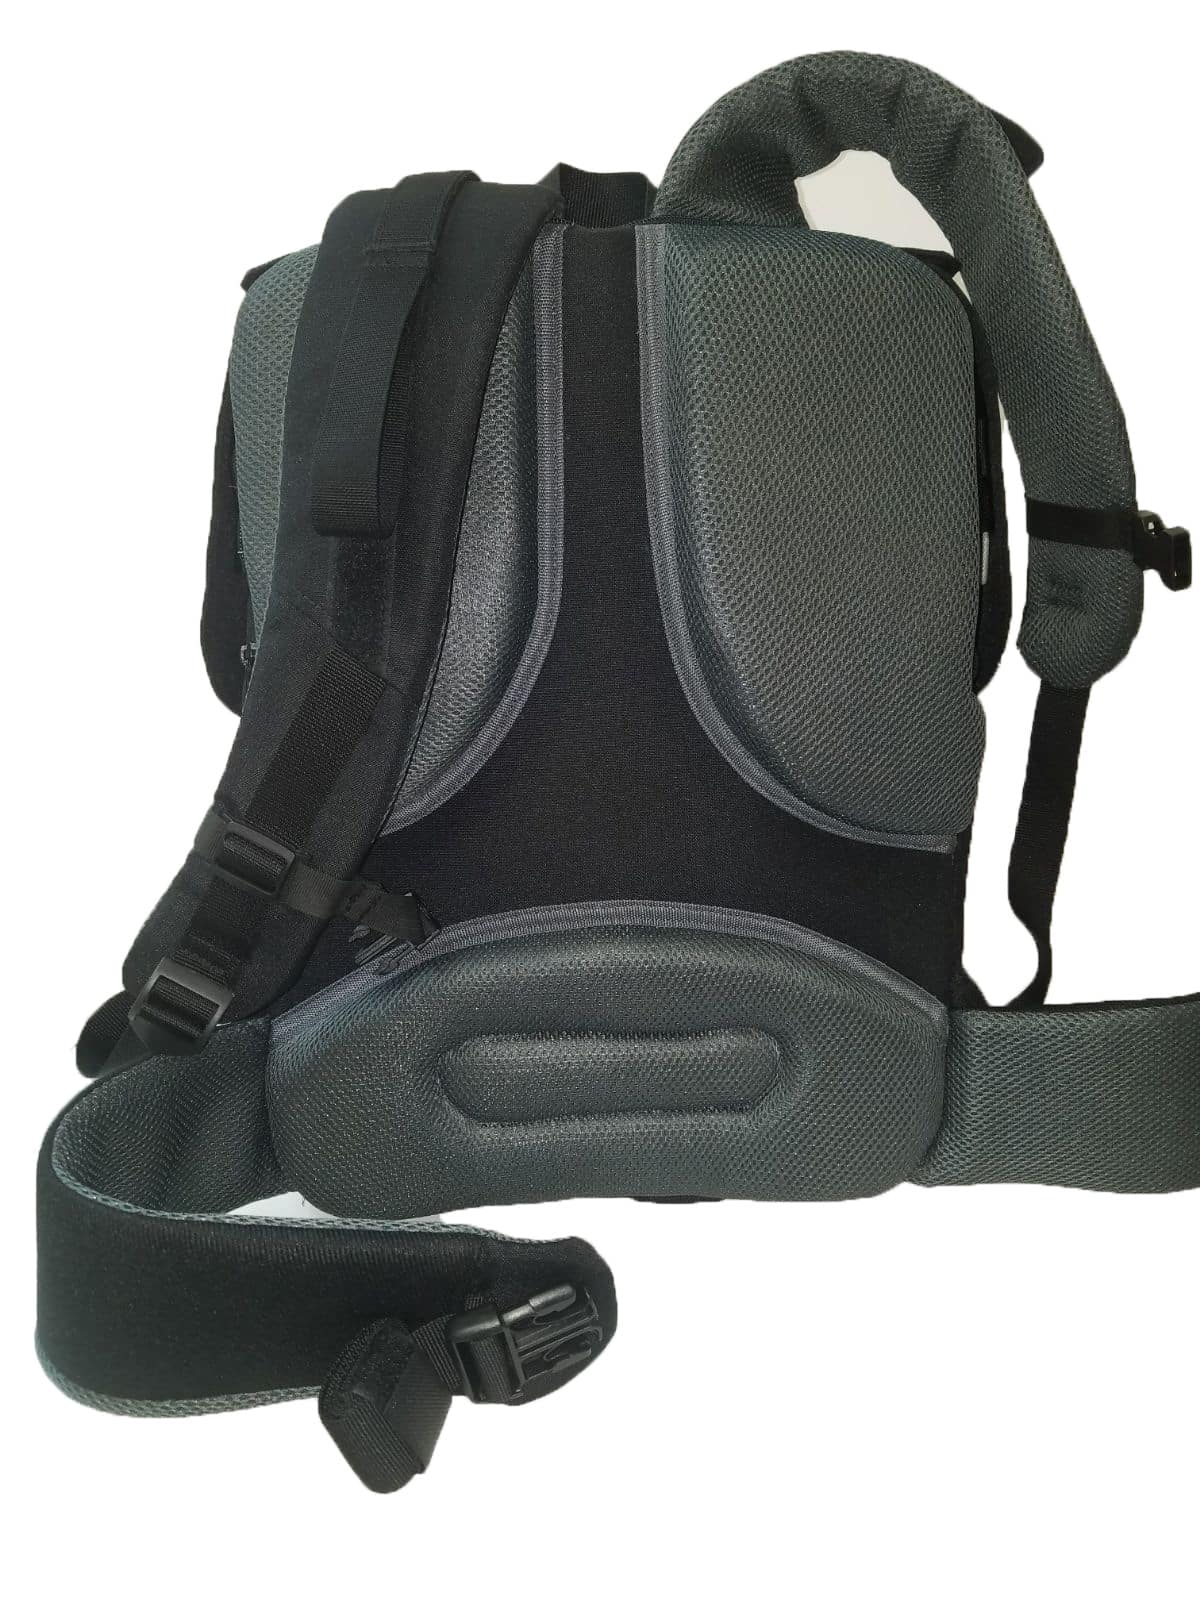 Masada Valkyrie Bulletproof Backpack Body Armor/Bulletproof Vest